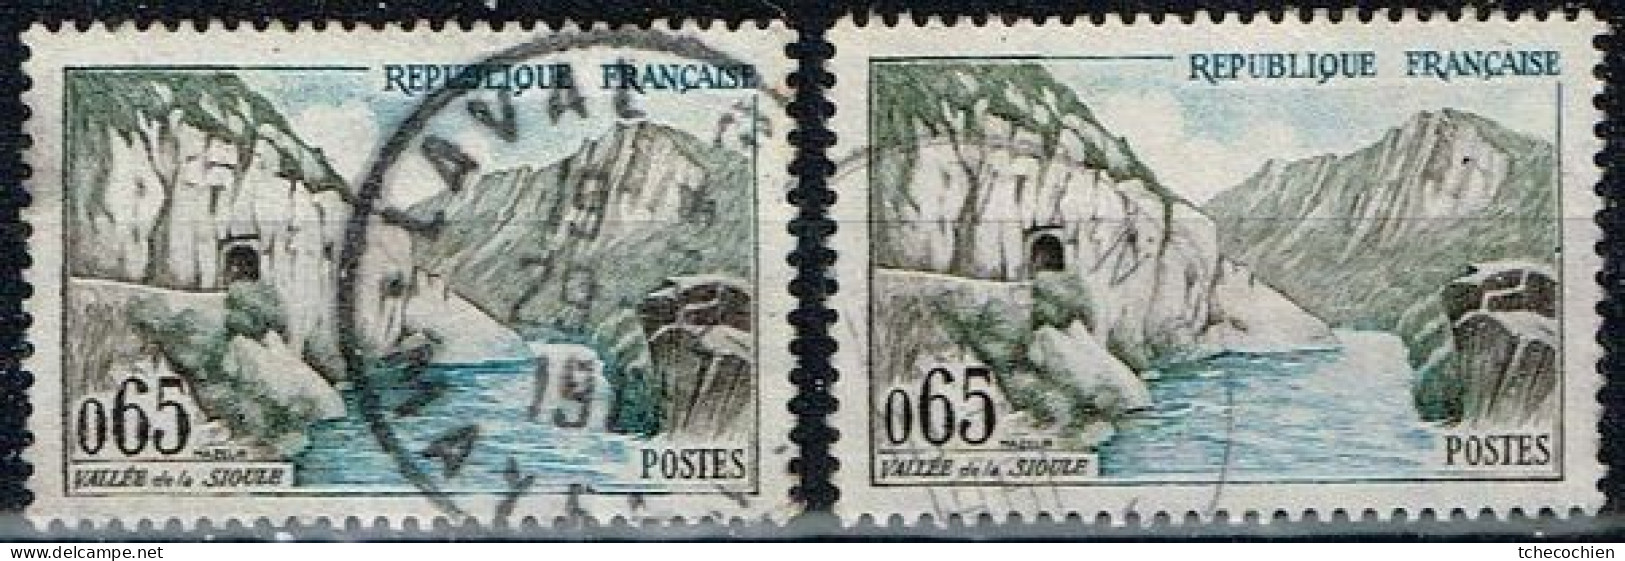 France - 1960 - Y&T N° 1239, Oblitéré. Couleur Bleu Très Pâle - Usati